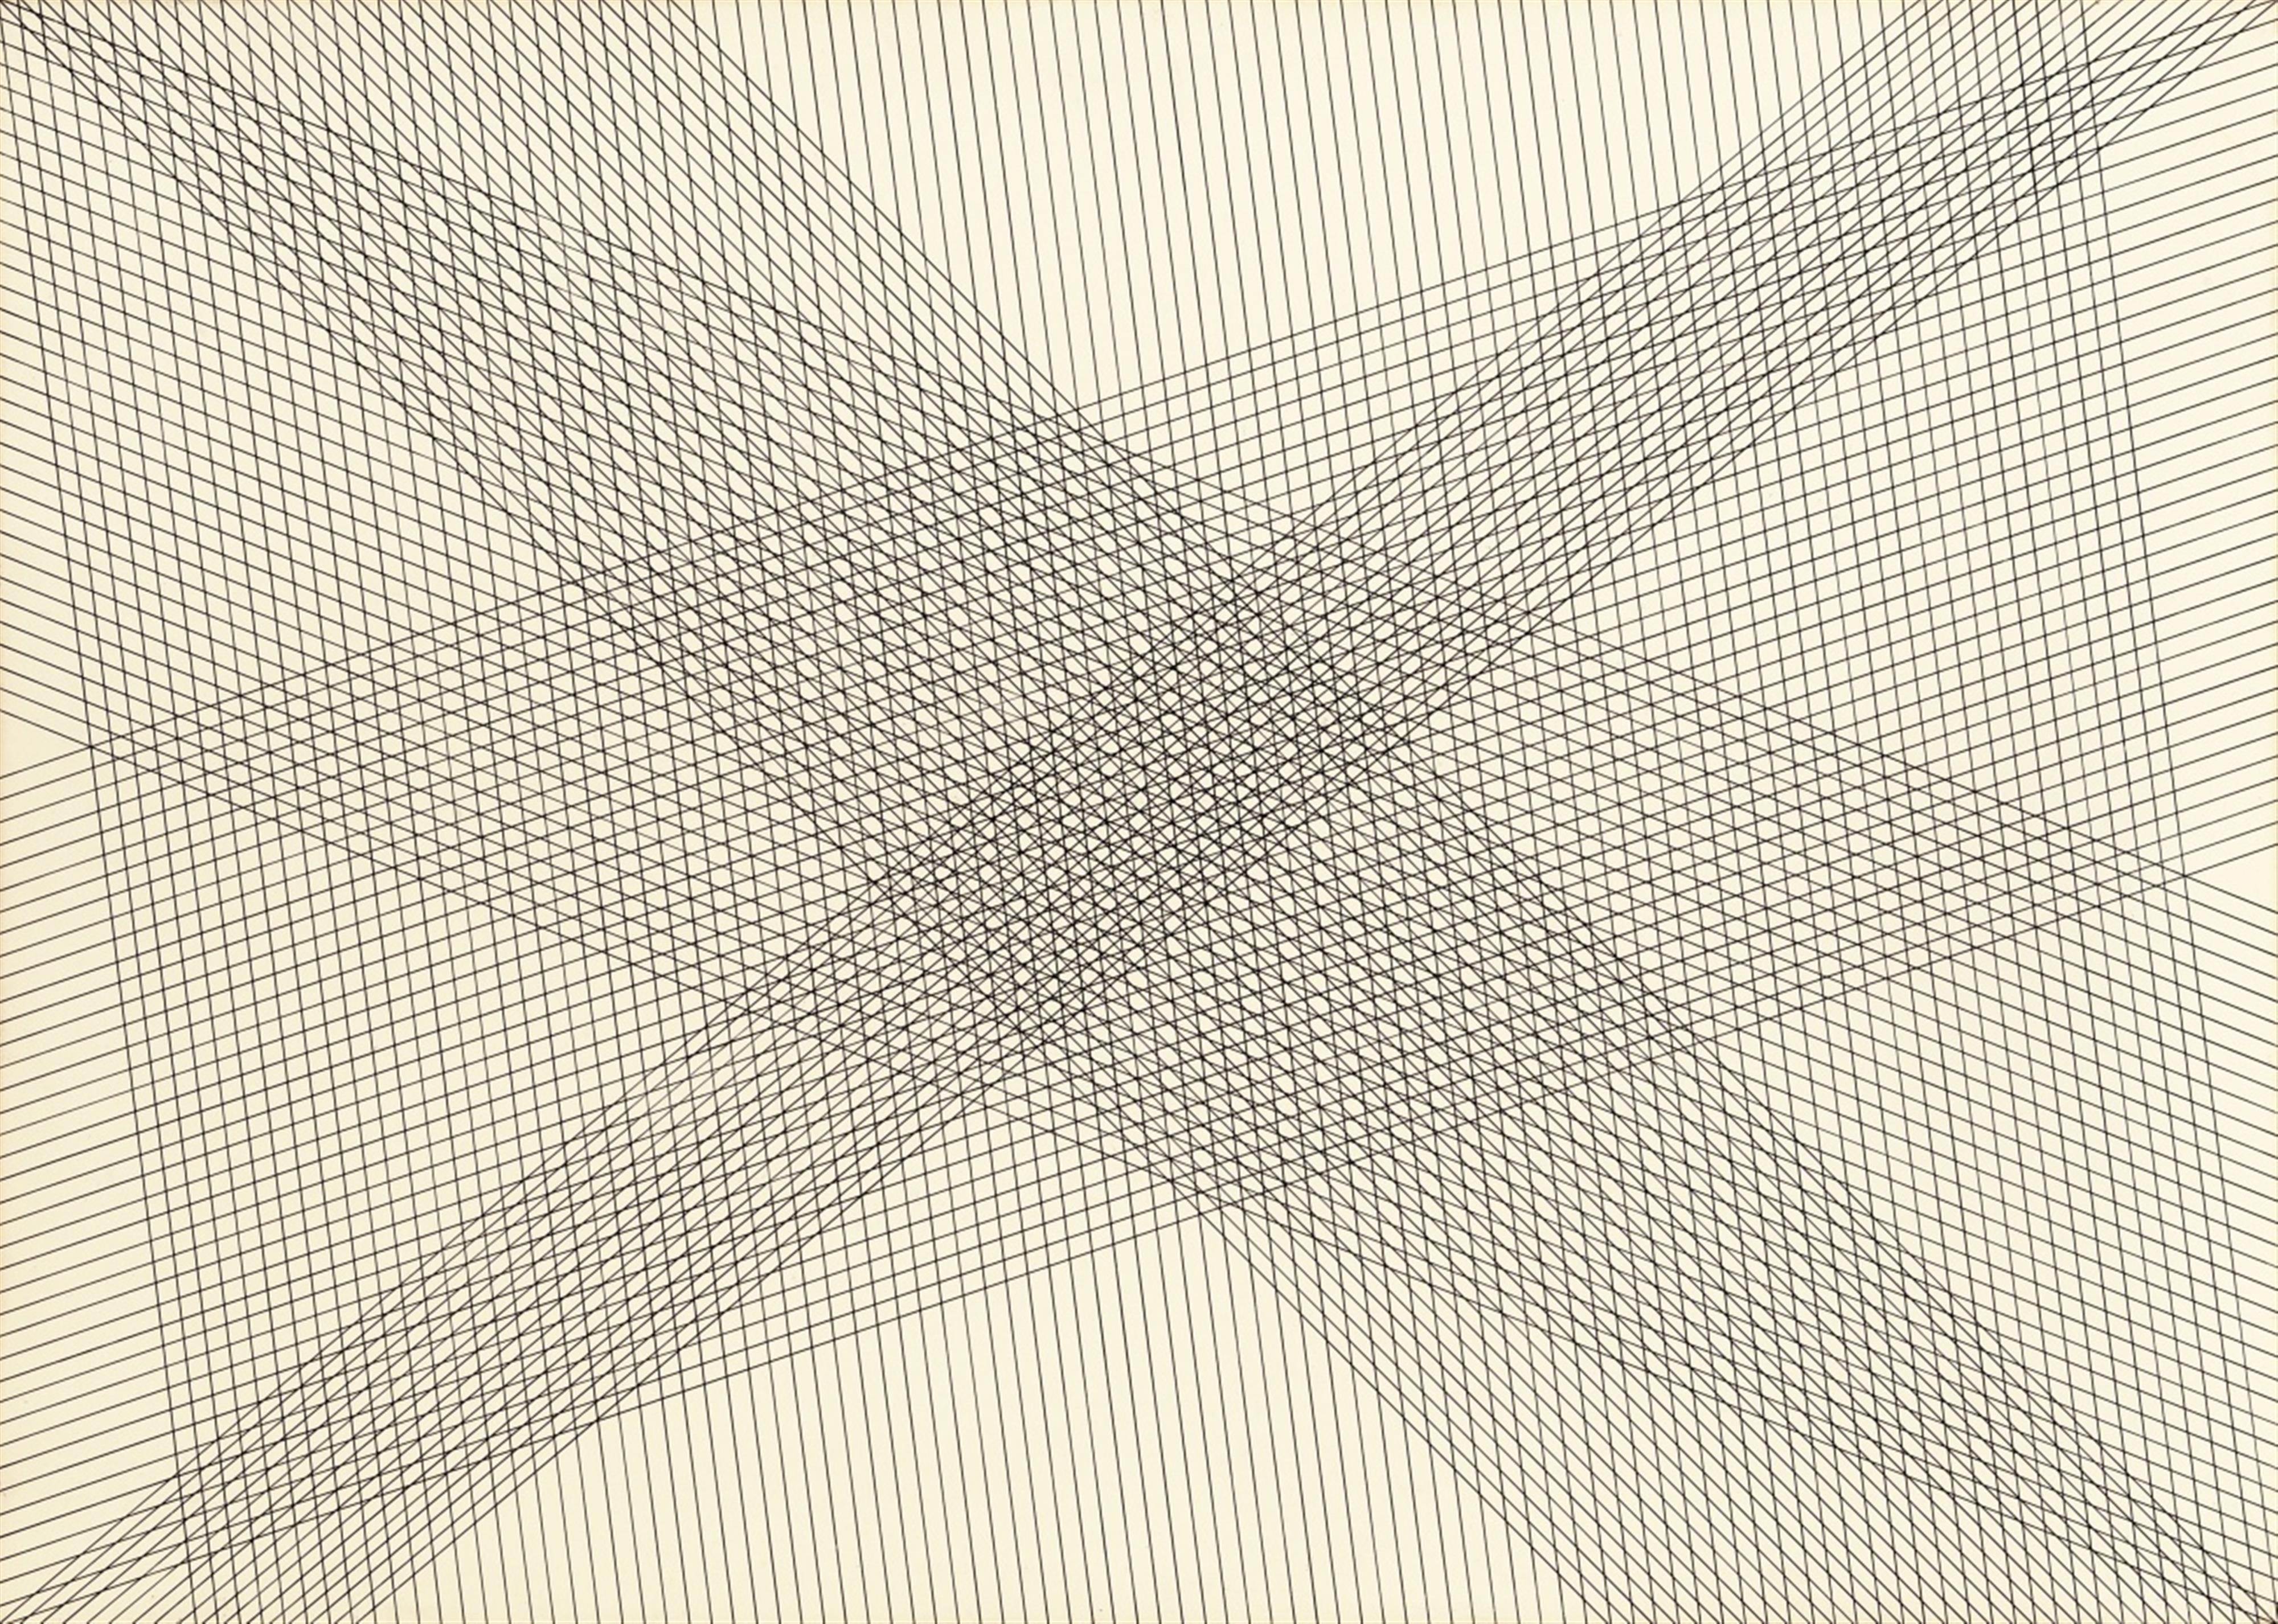 Herman de Vries - V 74 - 05 S (random line grid drawing) - image-1